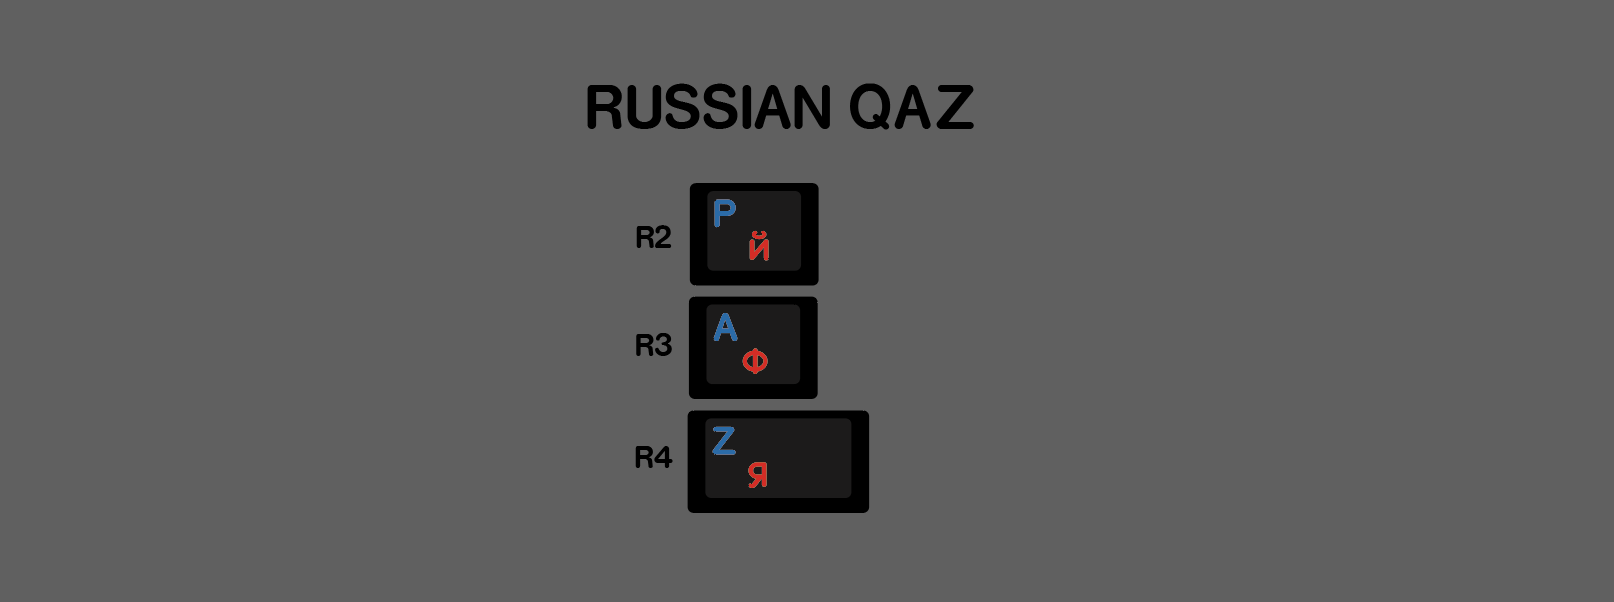 俄文QAZ.png